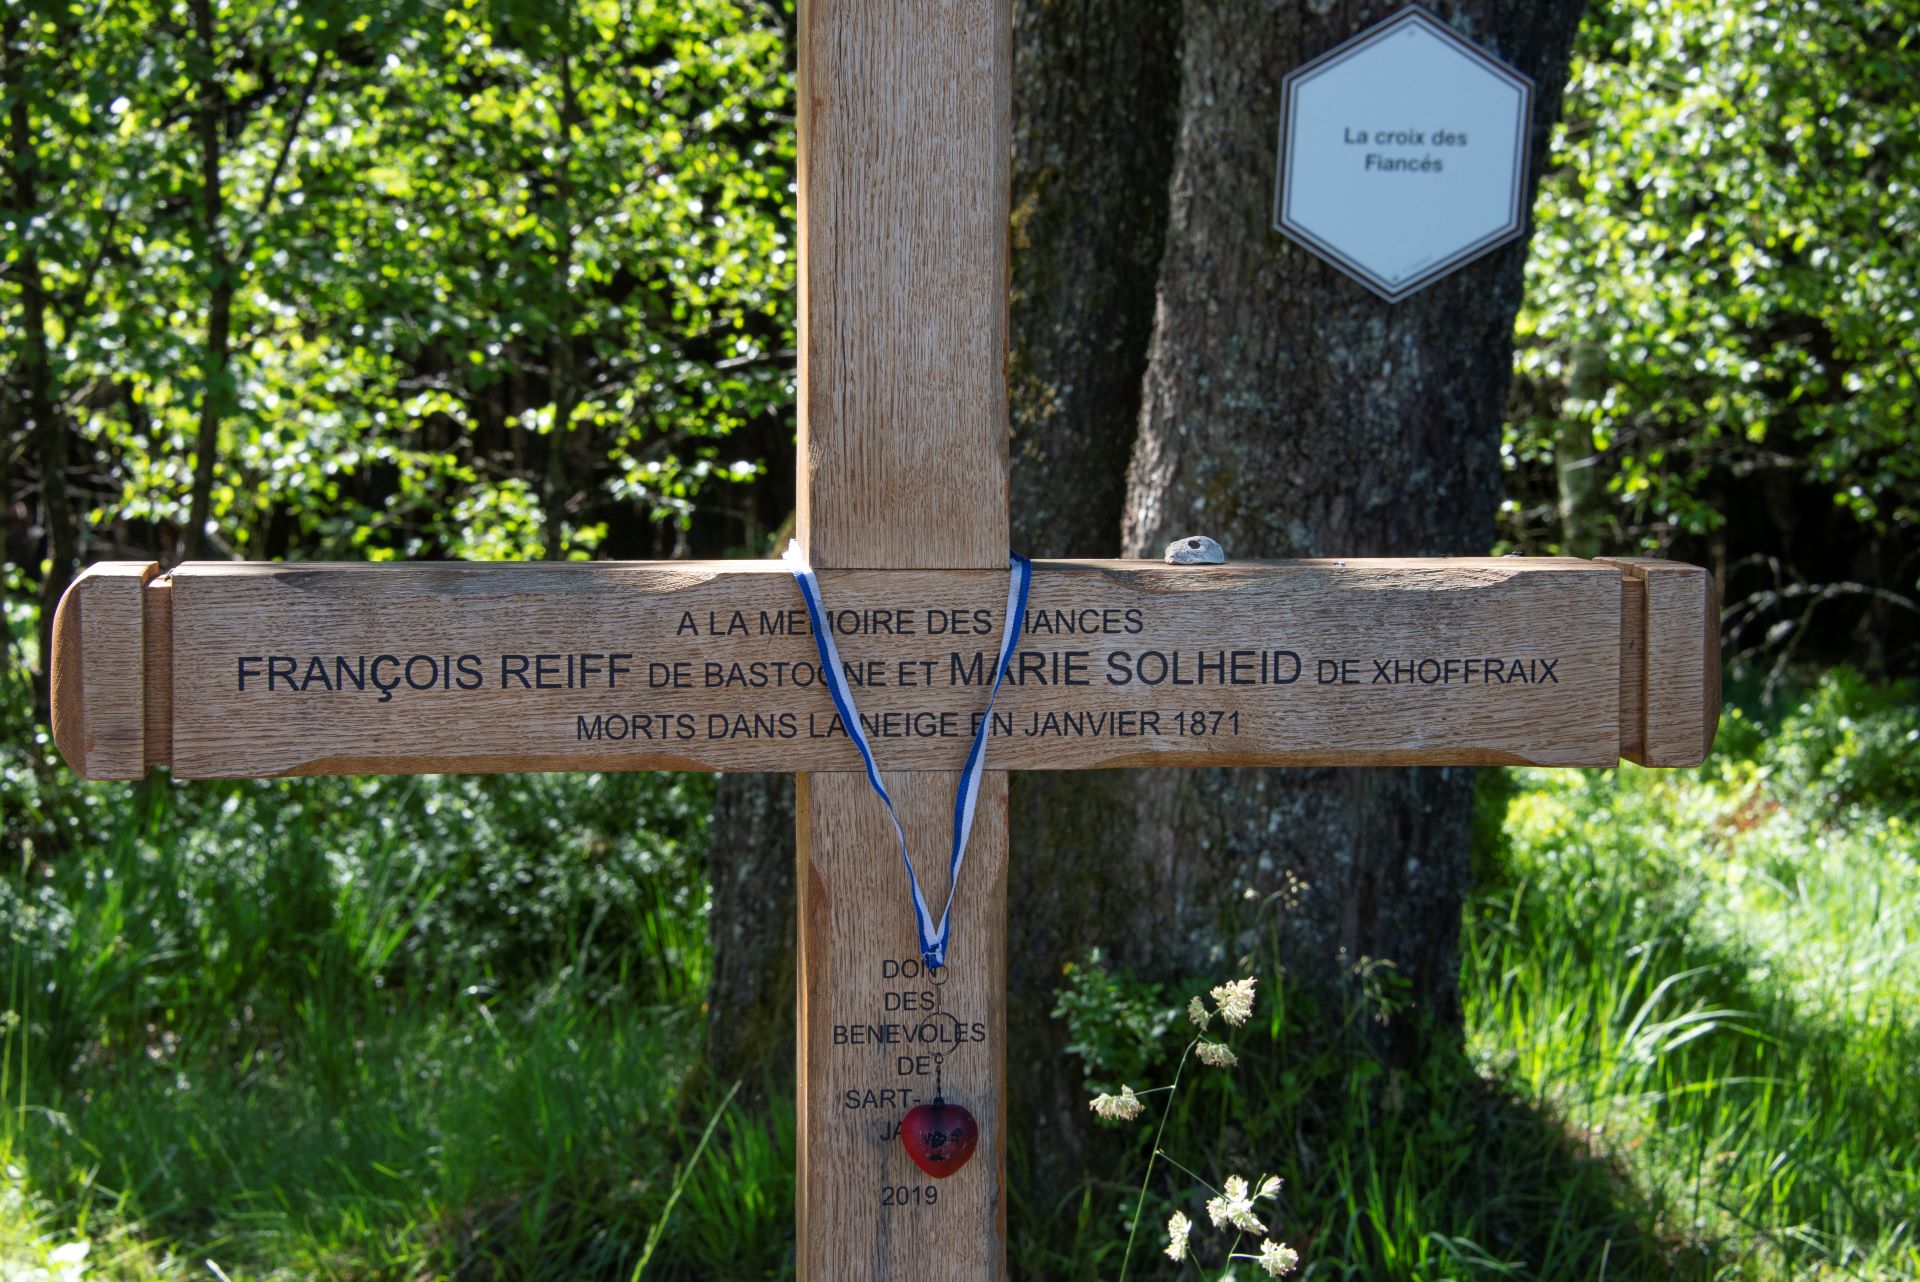 Im Mittelpunkt steht ein Kreuz mit den Namen der berühmten historischen Figur Francois Reiff. Es befindet sich zwischen Bäumen.